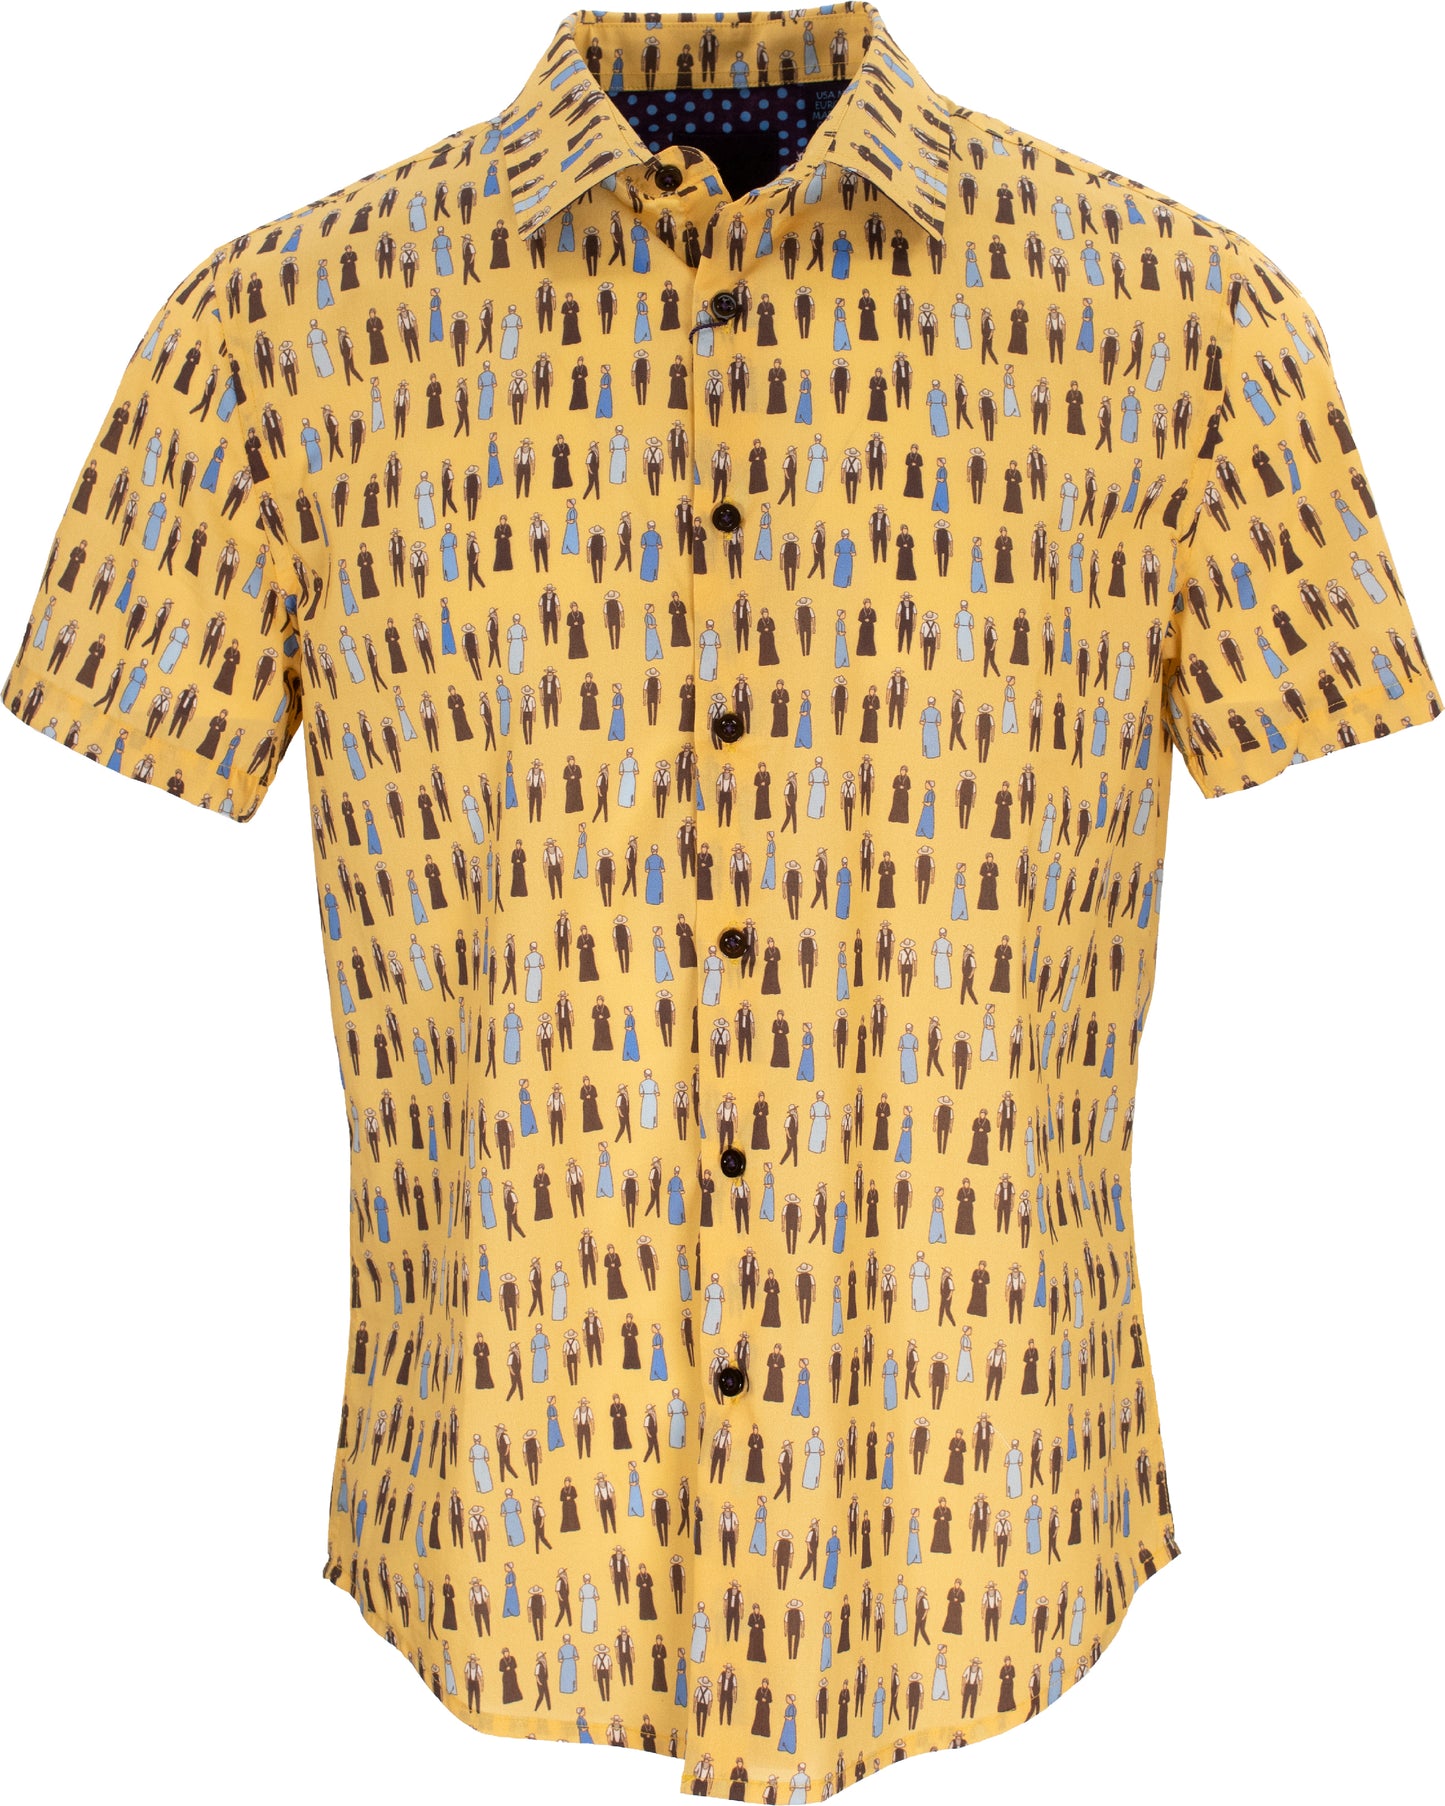 George Folk Marigold Shirt